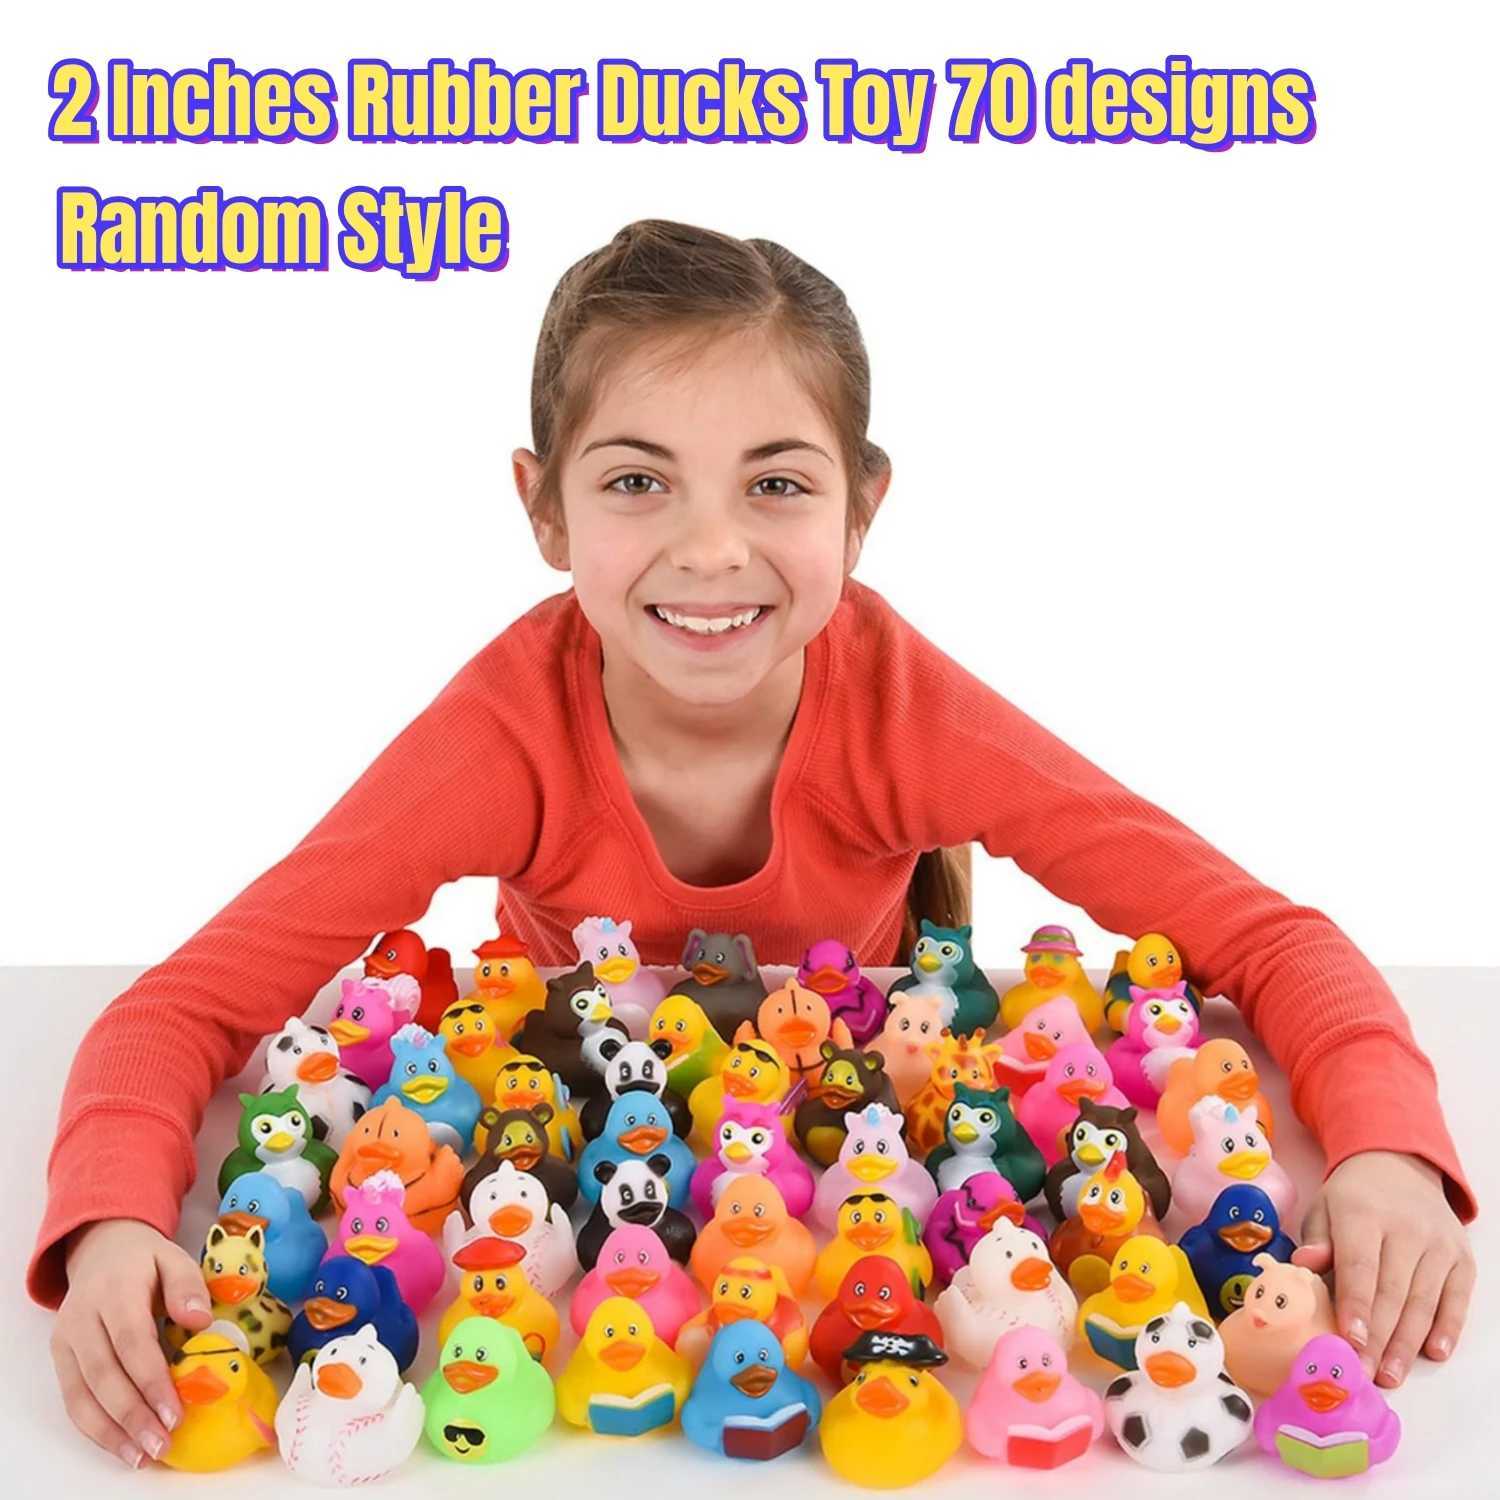 Babybadspielzeug 6/12/24/2 Zoll Gummi Enten Spielzeug 70 Designs Enten für Kinder